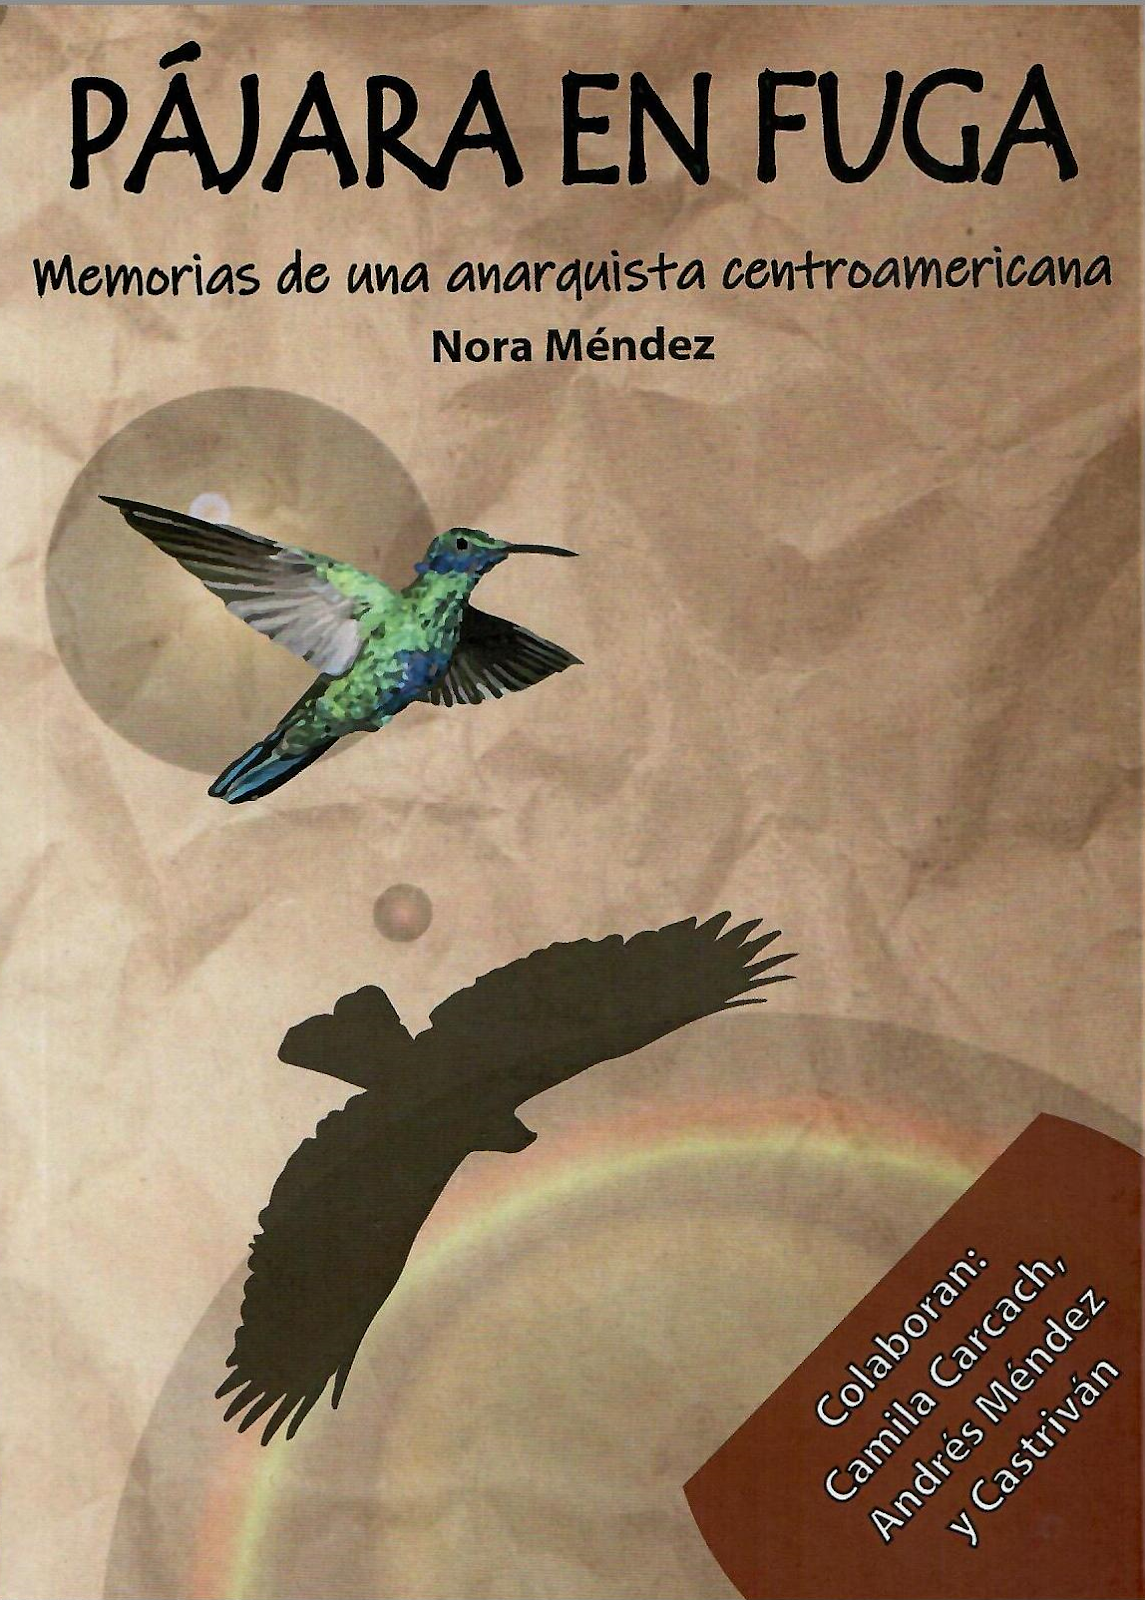 PÁJARA EN FUGA. Memorias de una anarquista centroamericana. Nora Méndez.